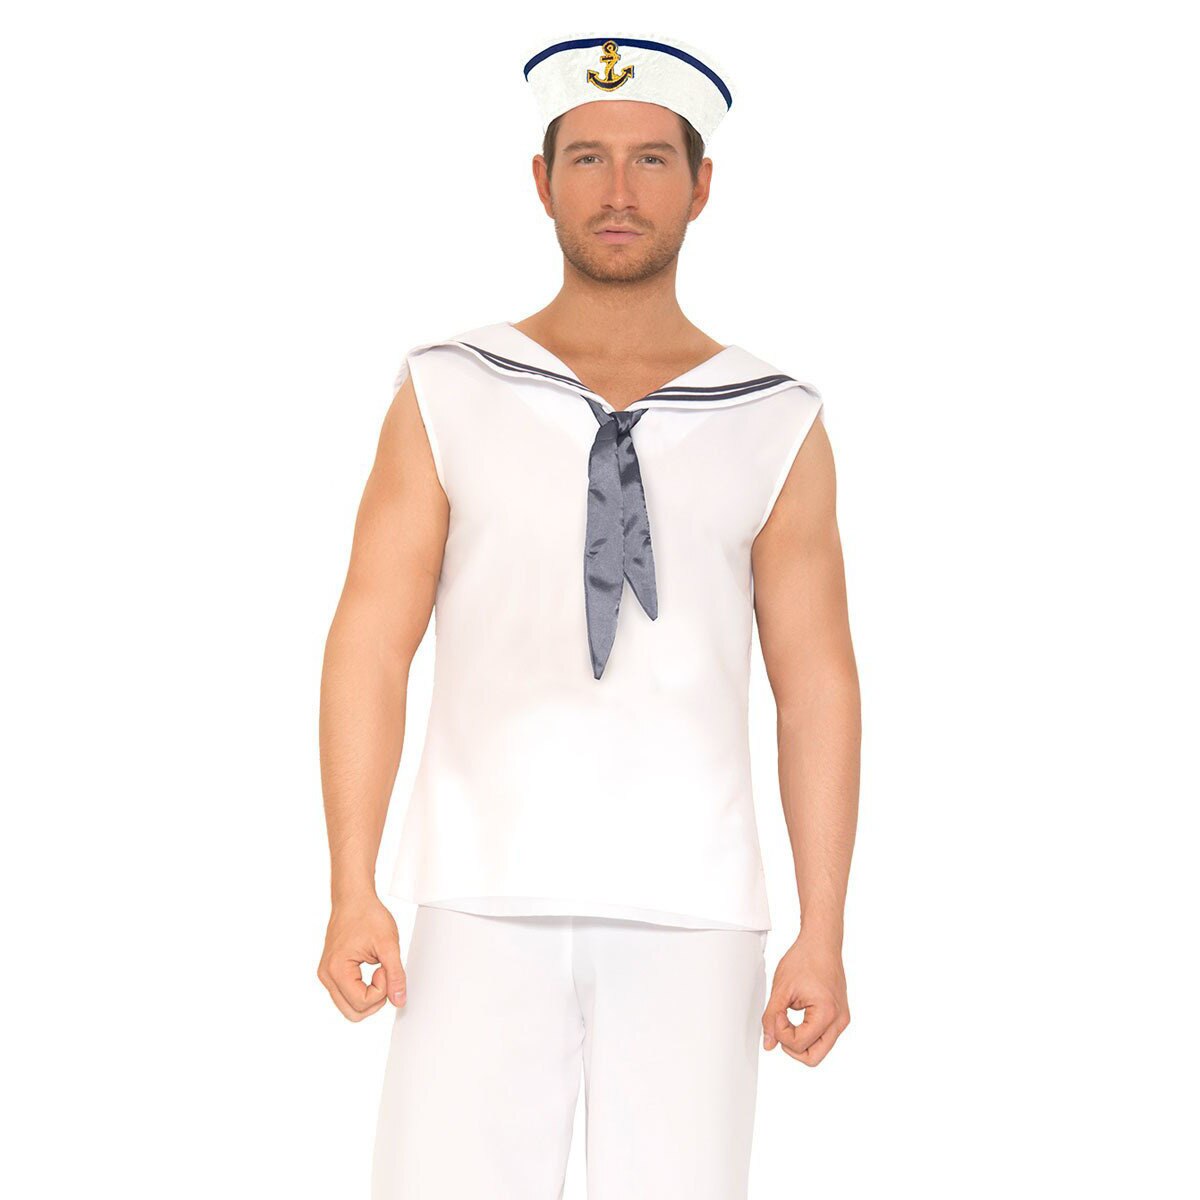 Mens Navy Sailor Costume White